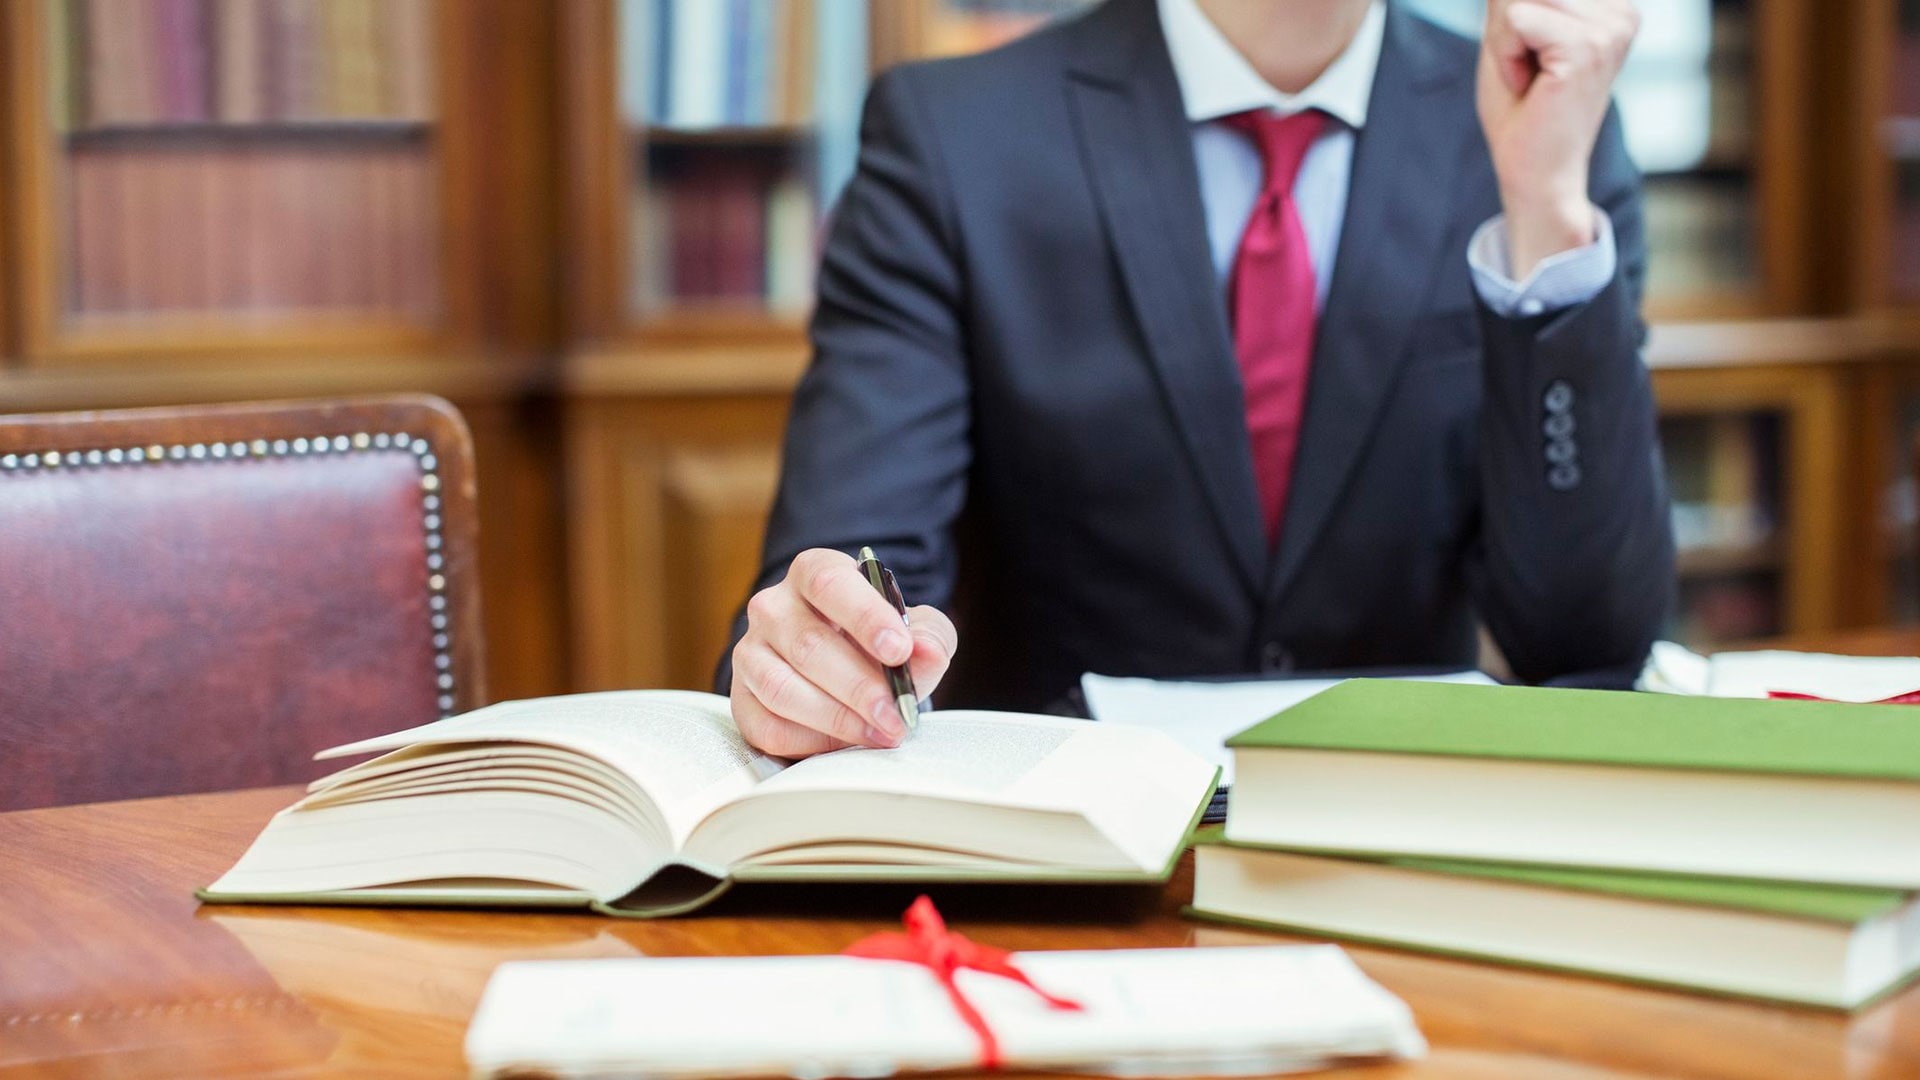 Курсы повышения квалификации для юристов в Краснодаре